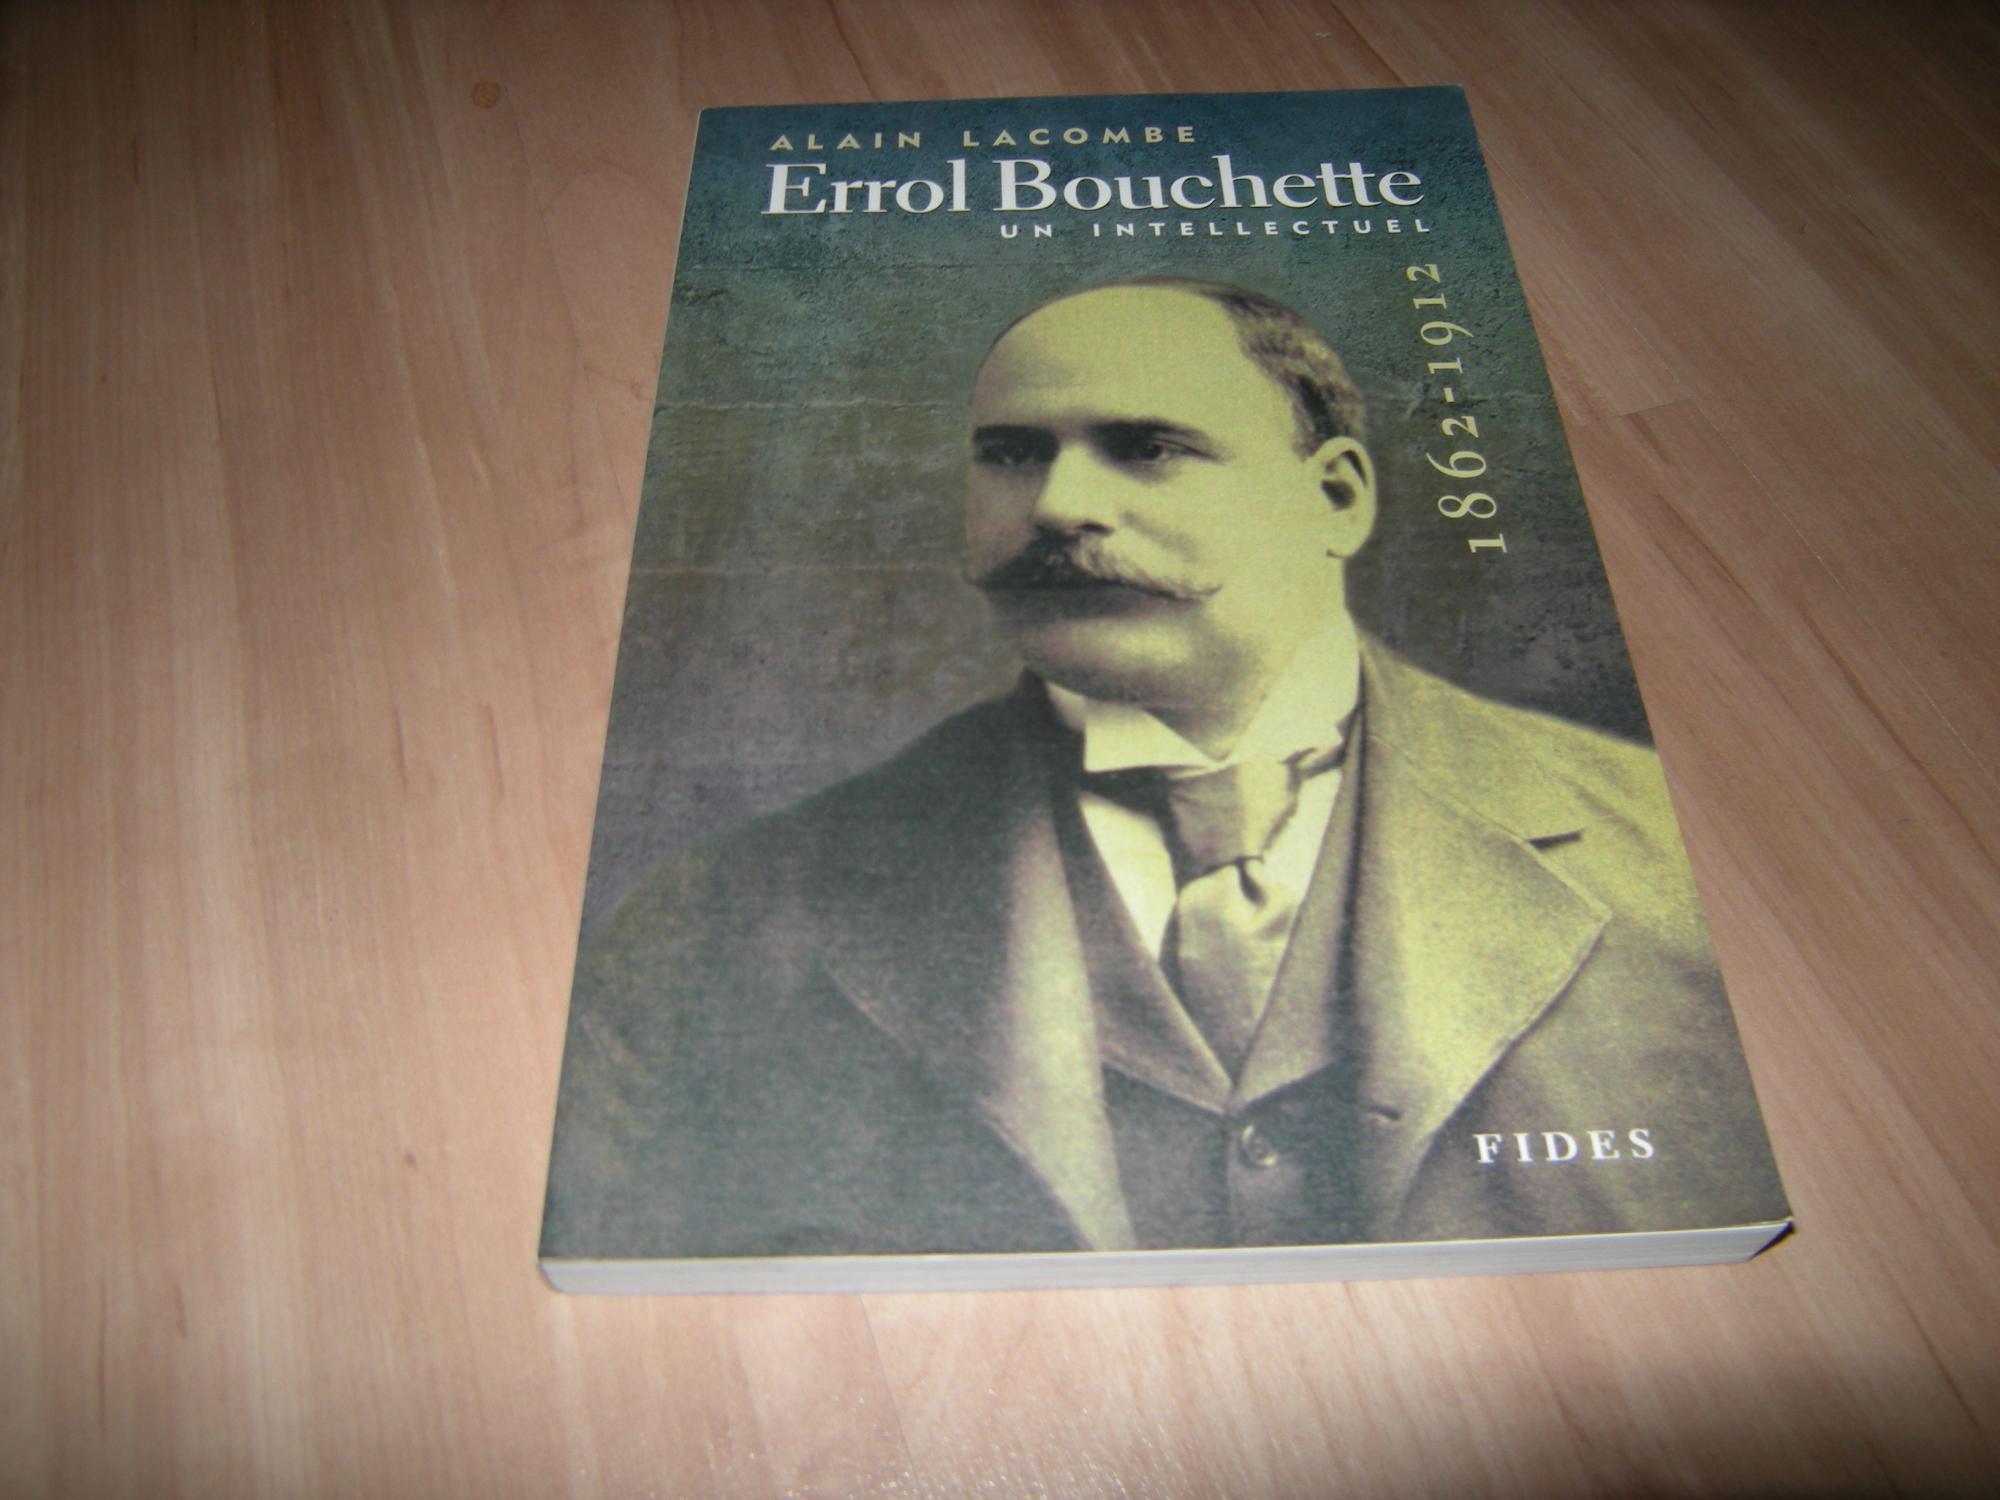 Errol Bouchette, 1862-1912 : Un intellectuel - Alain Lacombe